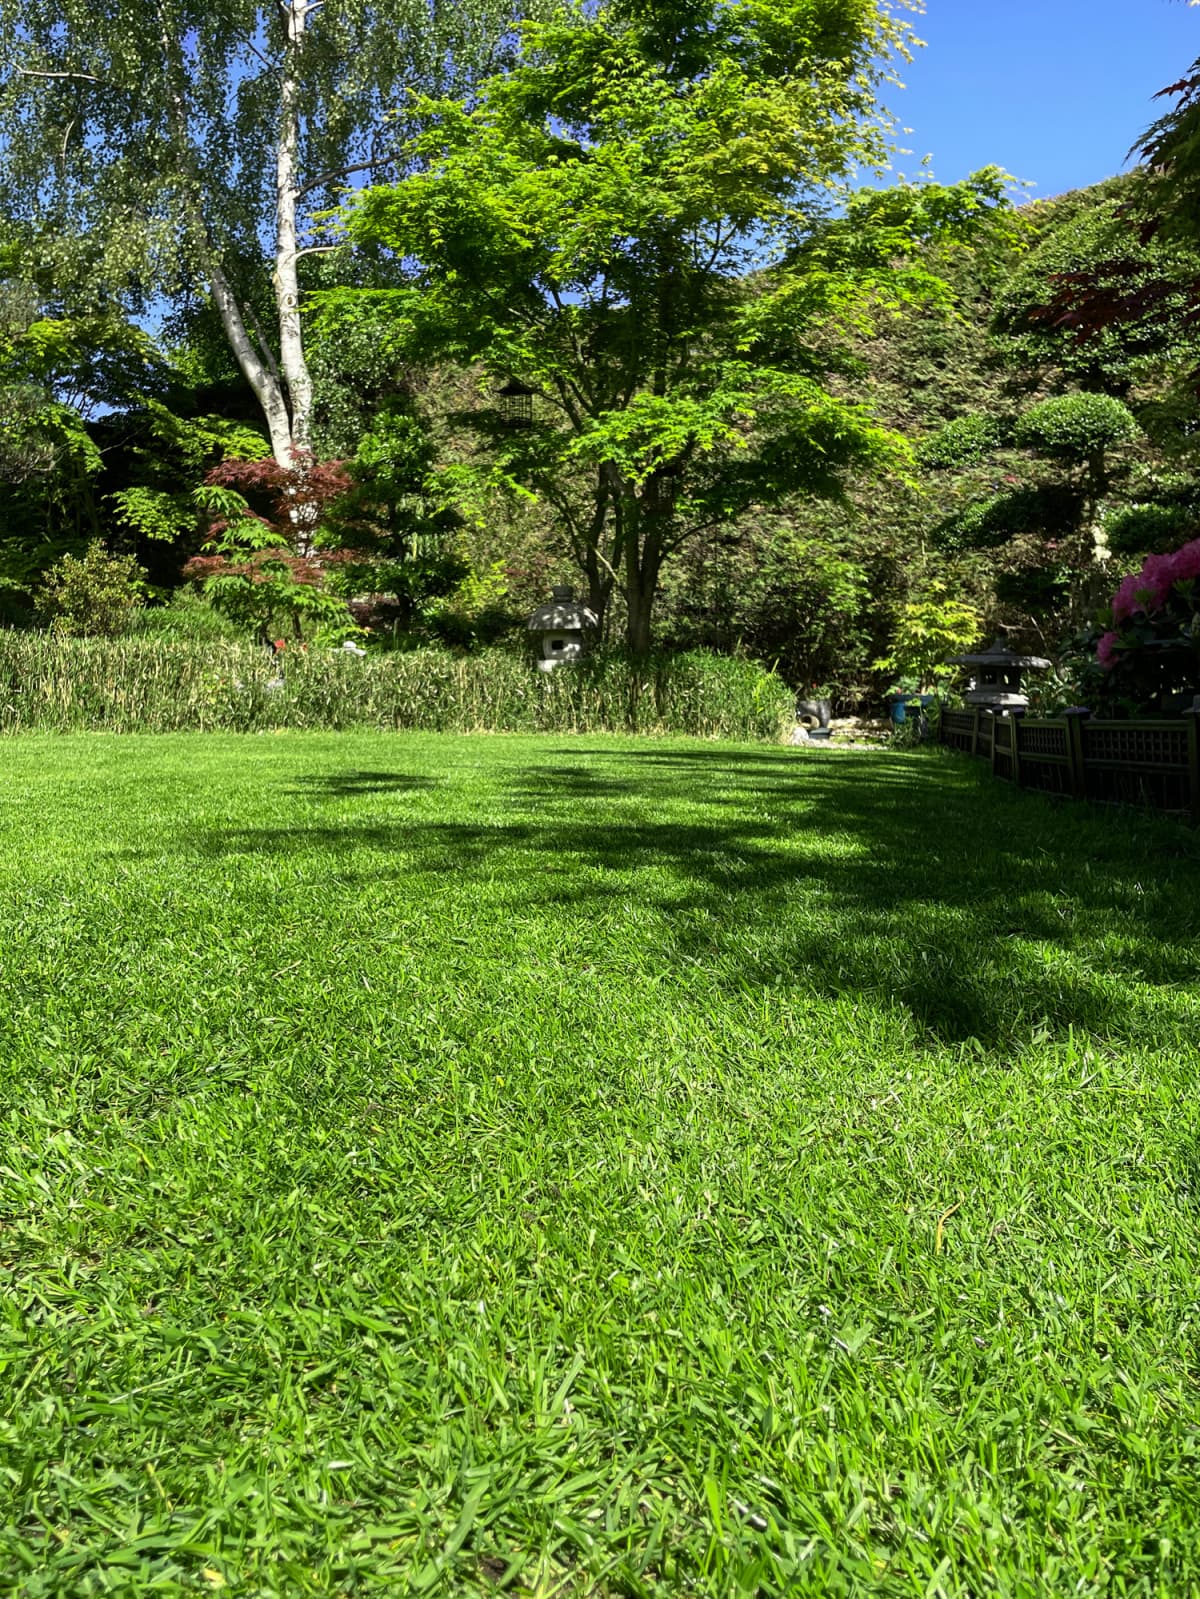 A lawn